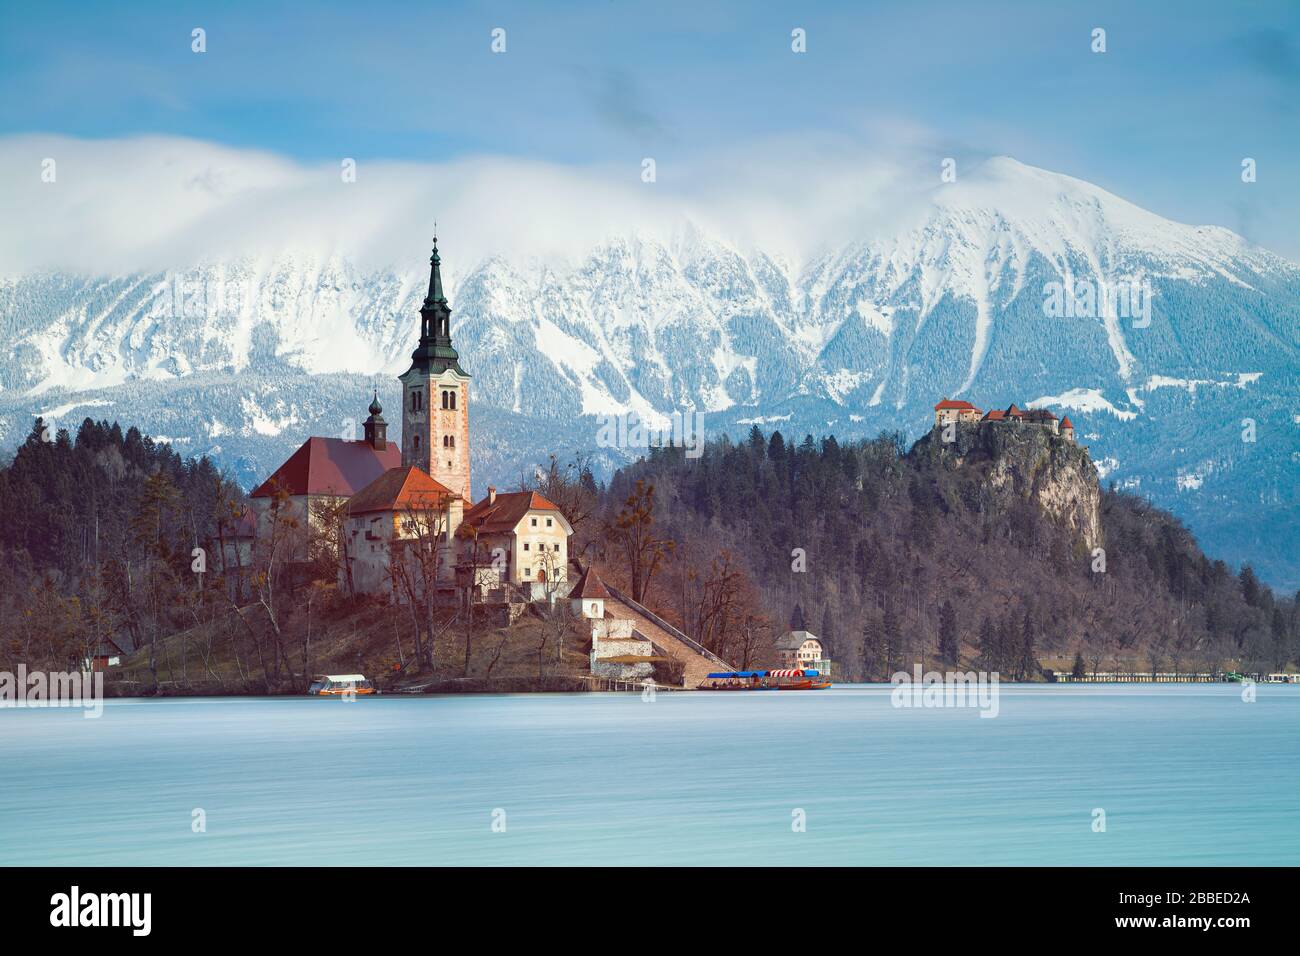 Bleder See, Slowenien. Bild von Lake Bled mit kleiner Bleder Insel während des Frühlingsaufgangs. Bled, Slowenien, Europa. Stockfoto